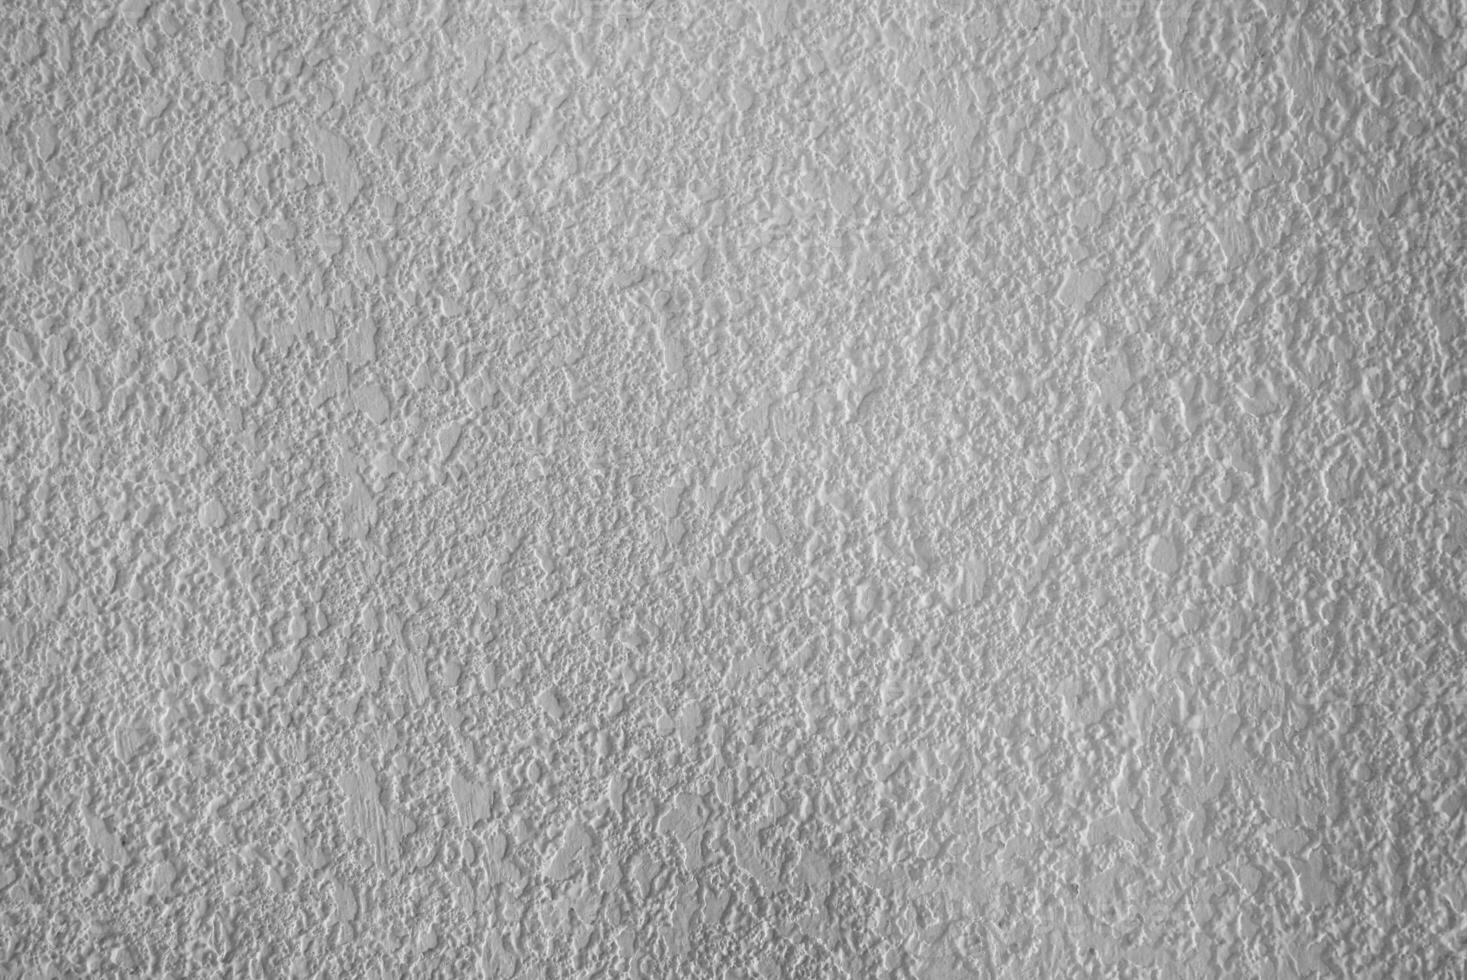 blanc ciment texture avec Naturel modèle pour Contexte. photo